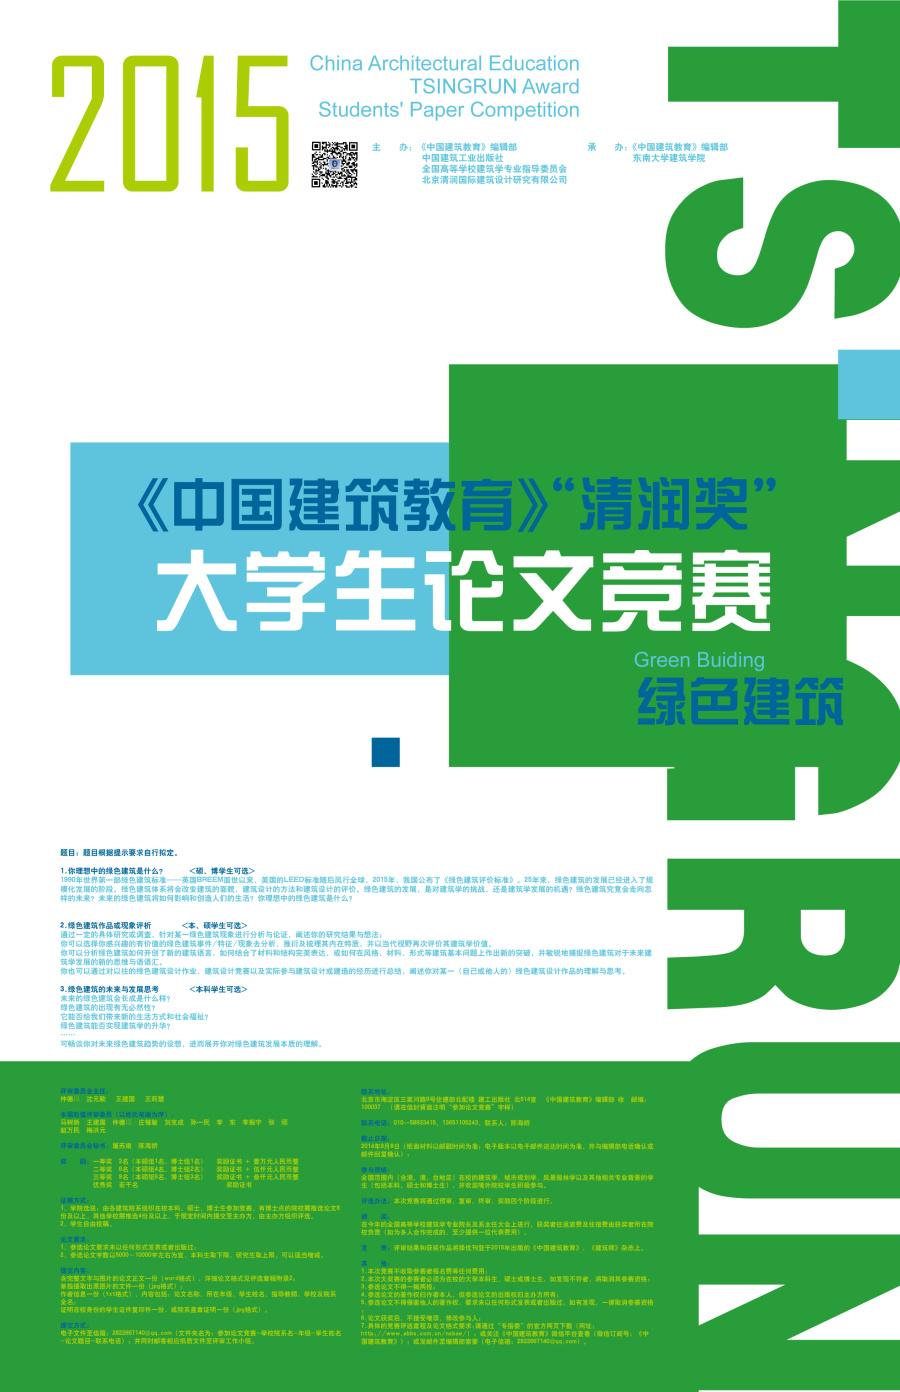 2015《中国建筑教育》清润奖 大学生论文竞赛